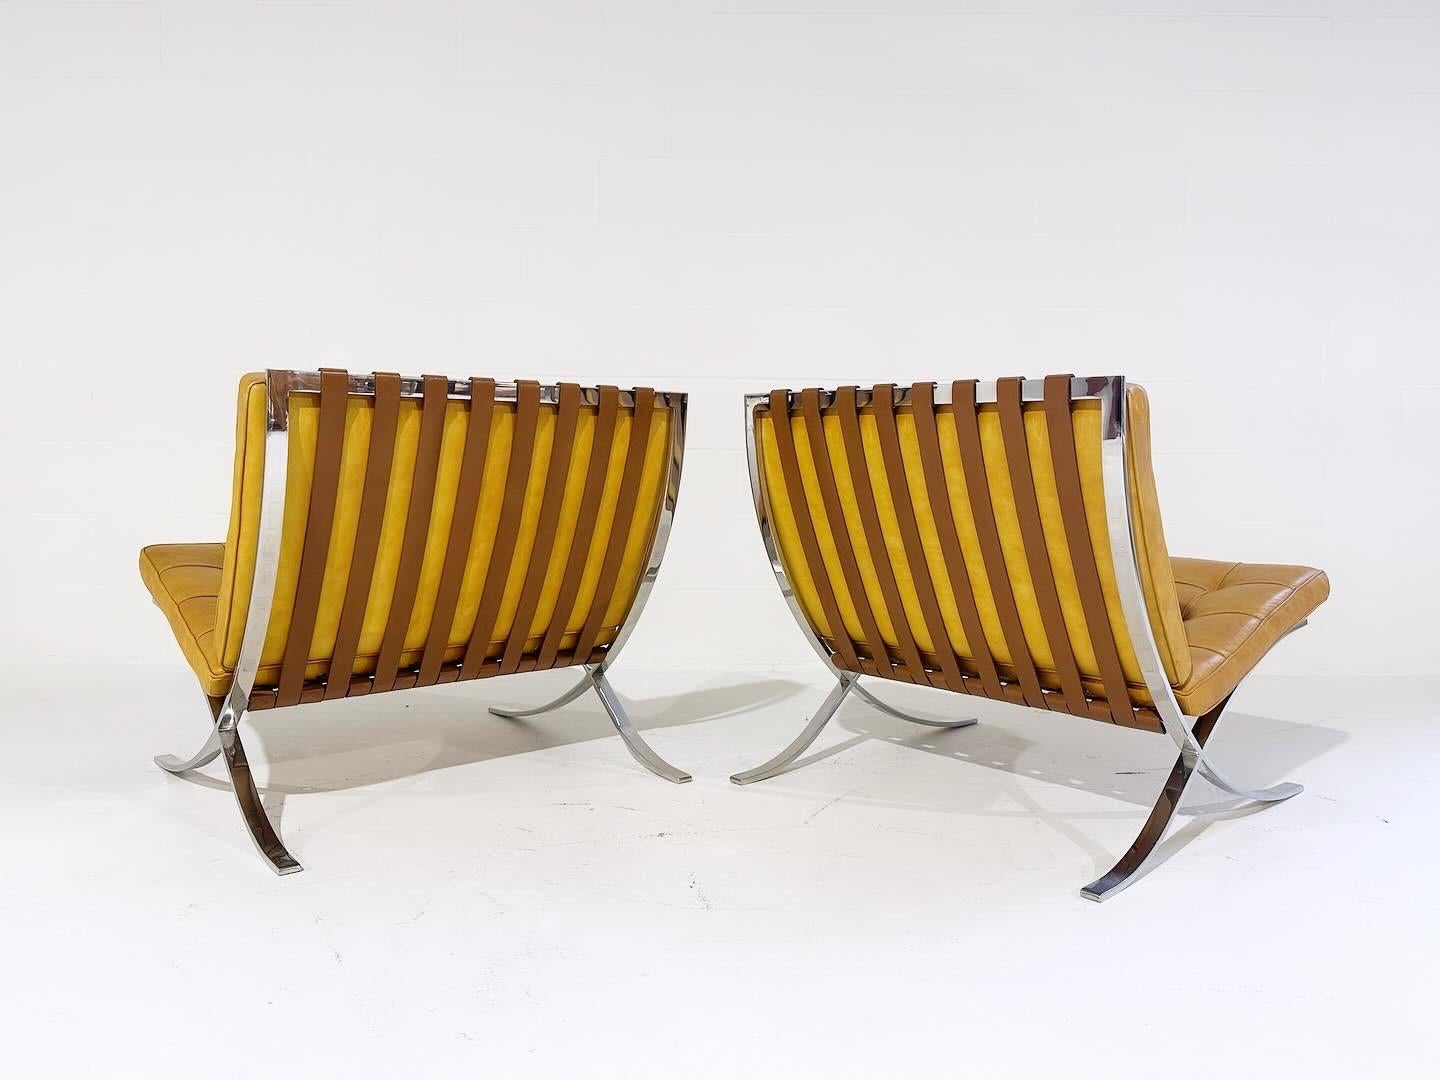 Une paire de collectionneurs. Cette superbe paire de chaises Barcelona avec ottomans a été fabriquée par Gerald R. Griffith sous l'étroite supervision de Mies van der Rohe. Les chaises Griffith ont des angles extrêmement précis et moins de renforts